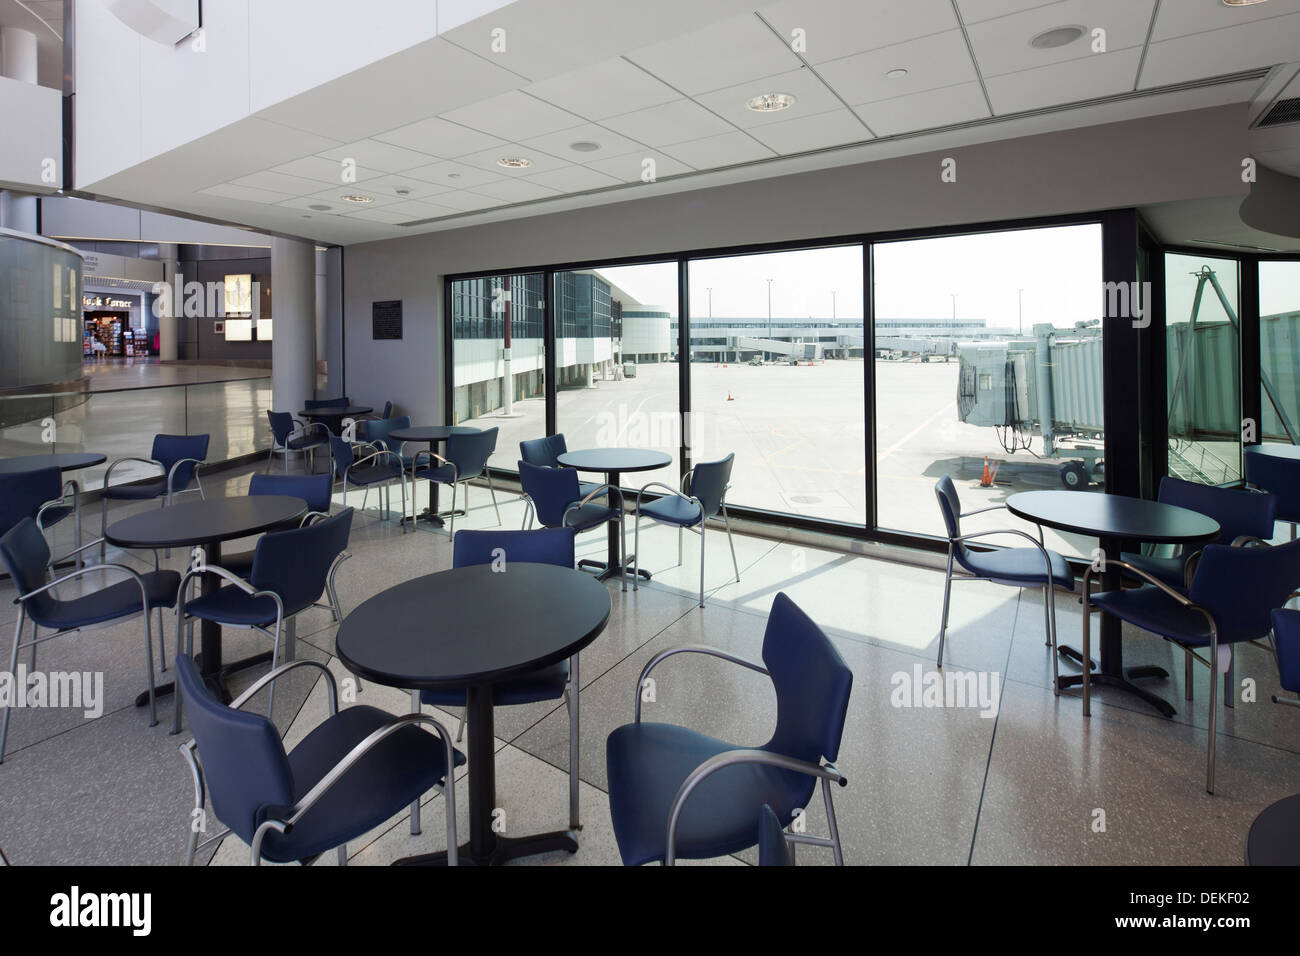 Empty cafe overlooking runway in airport Stock Photo